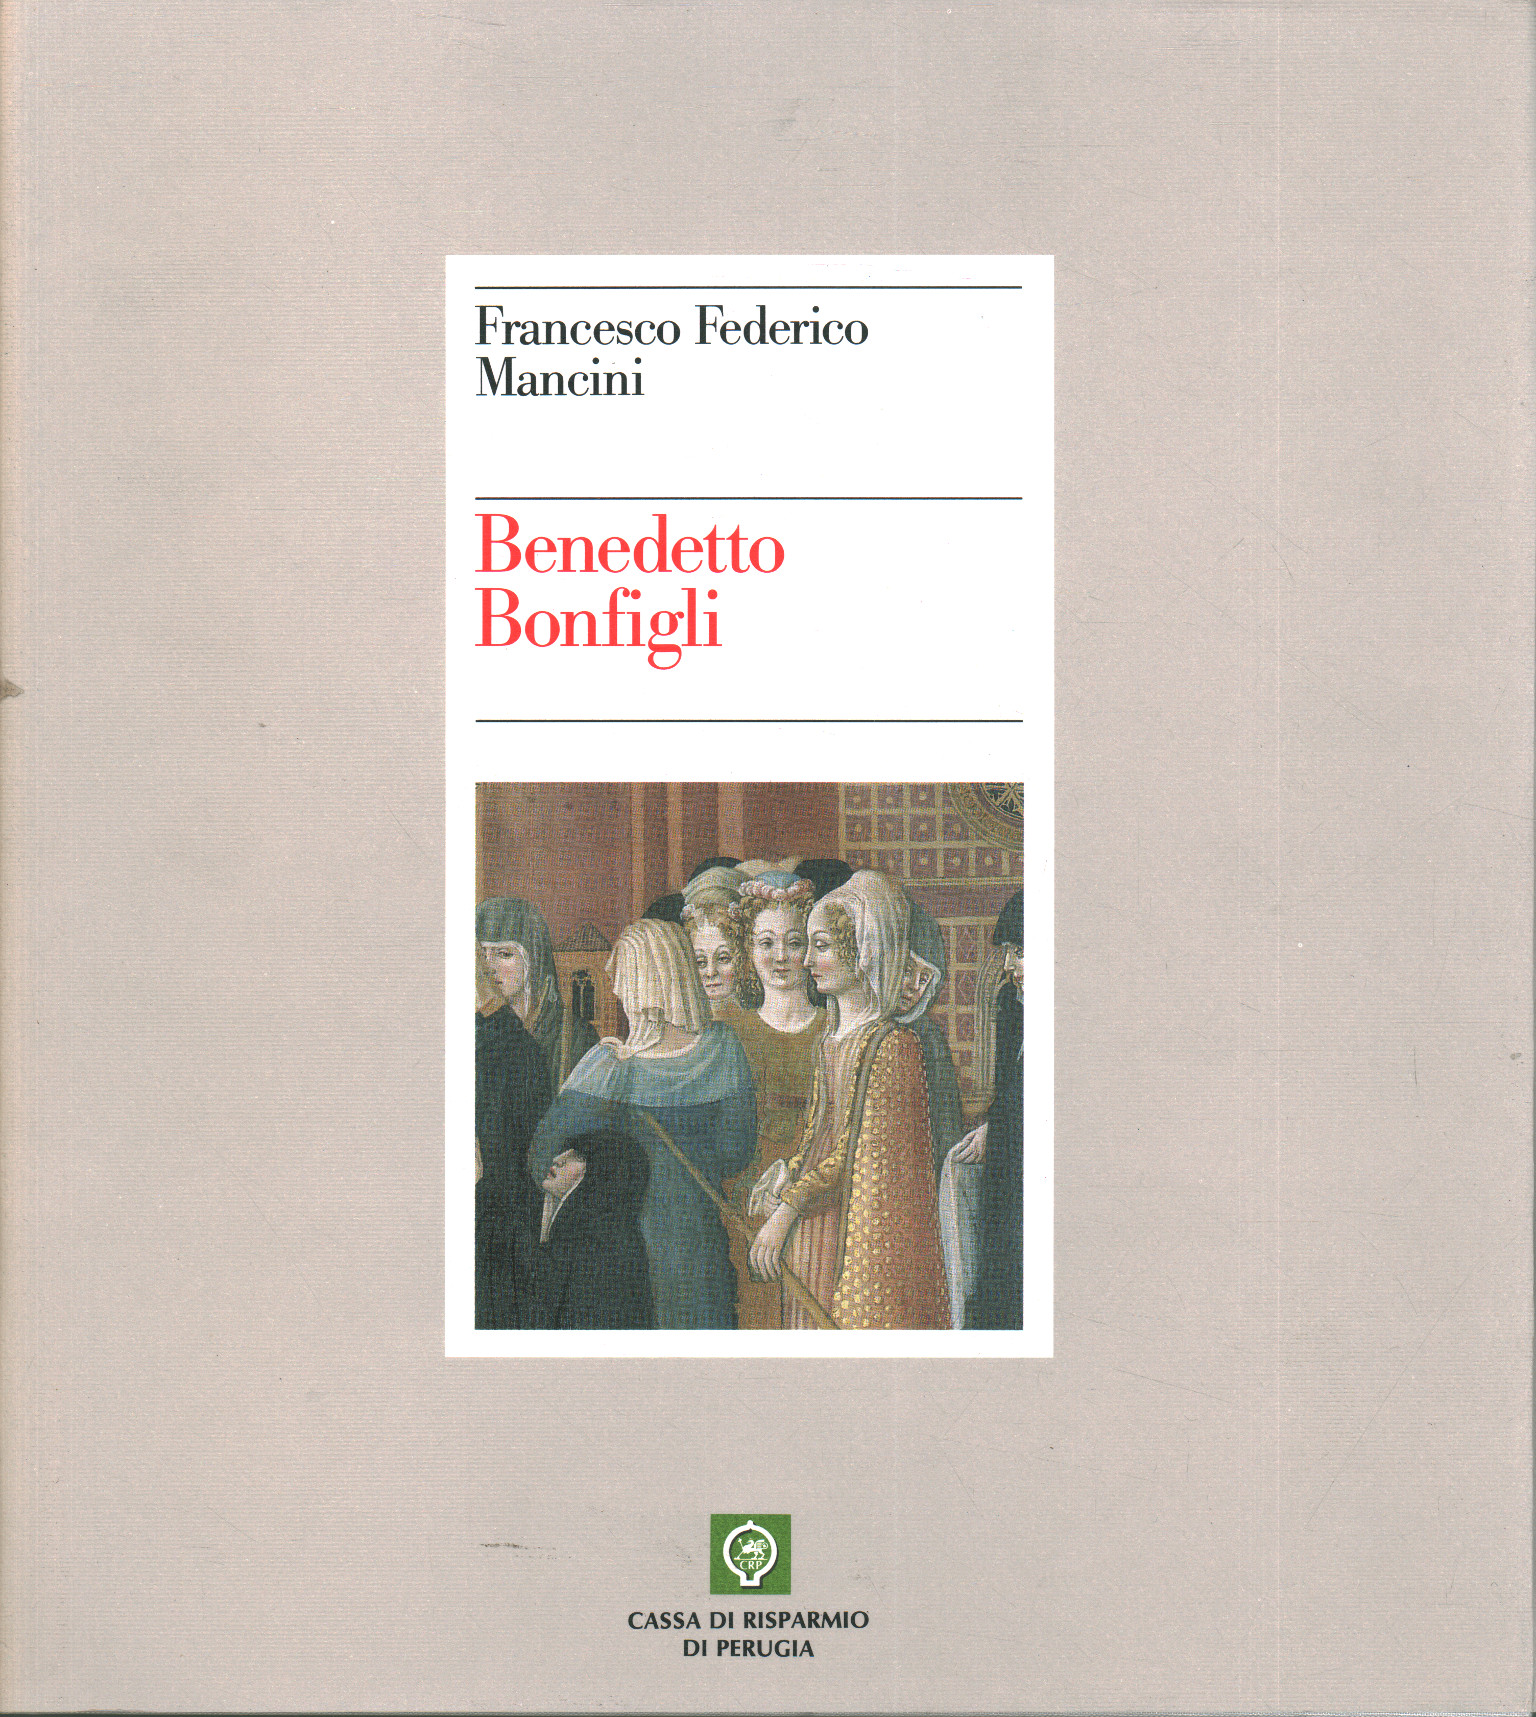 Books - Art - Modern, Benedetto Bonfigli